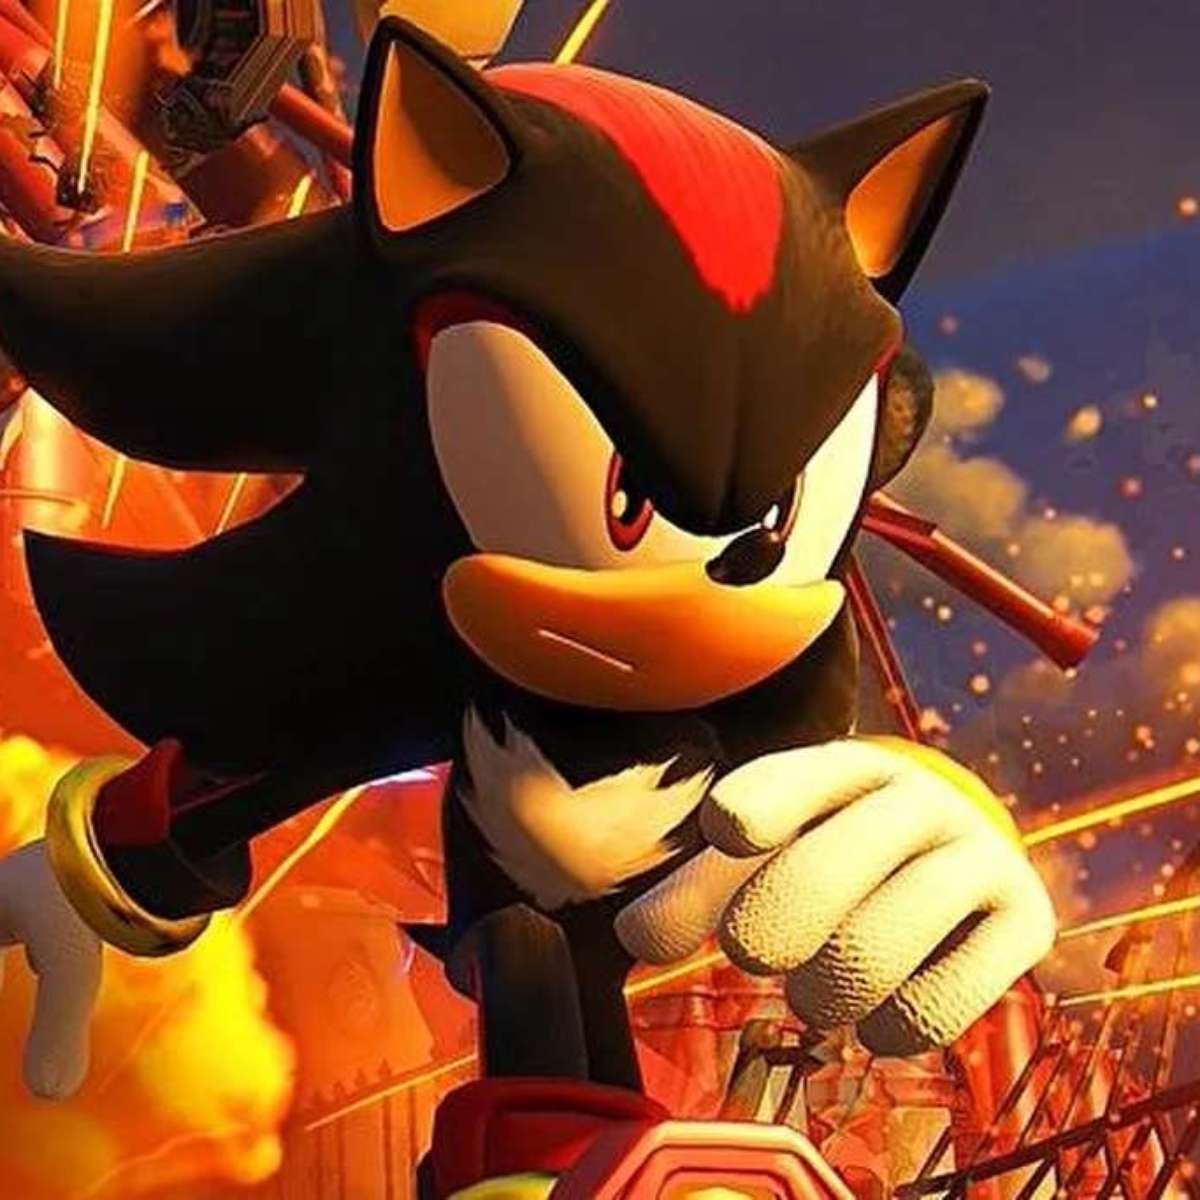 Sonic 3 ganha data de lançamento oficial; saiba mais